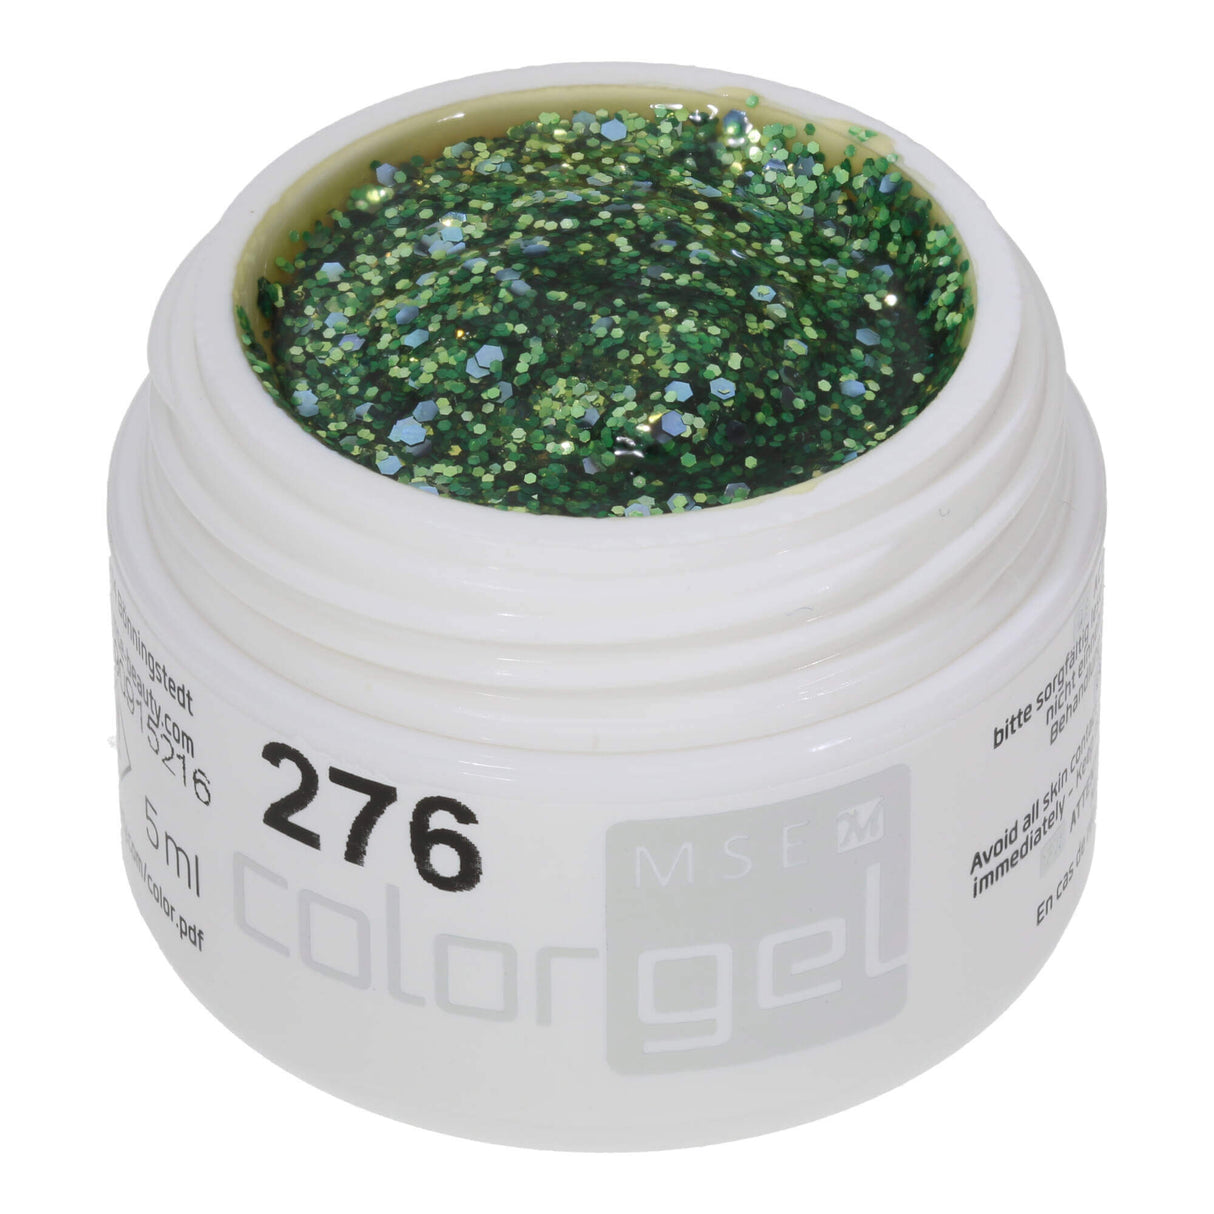 # 276 Premium GLITTER Color Gel 5 ml Gel pailleté vert de mai rehaussé de grosses paillettes violettes